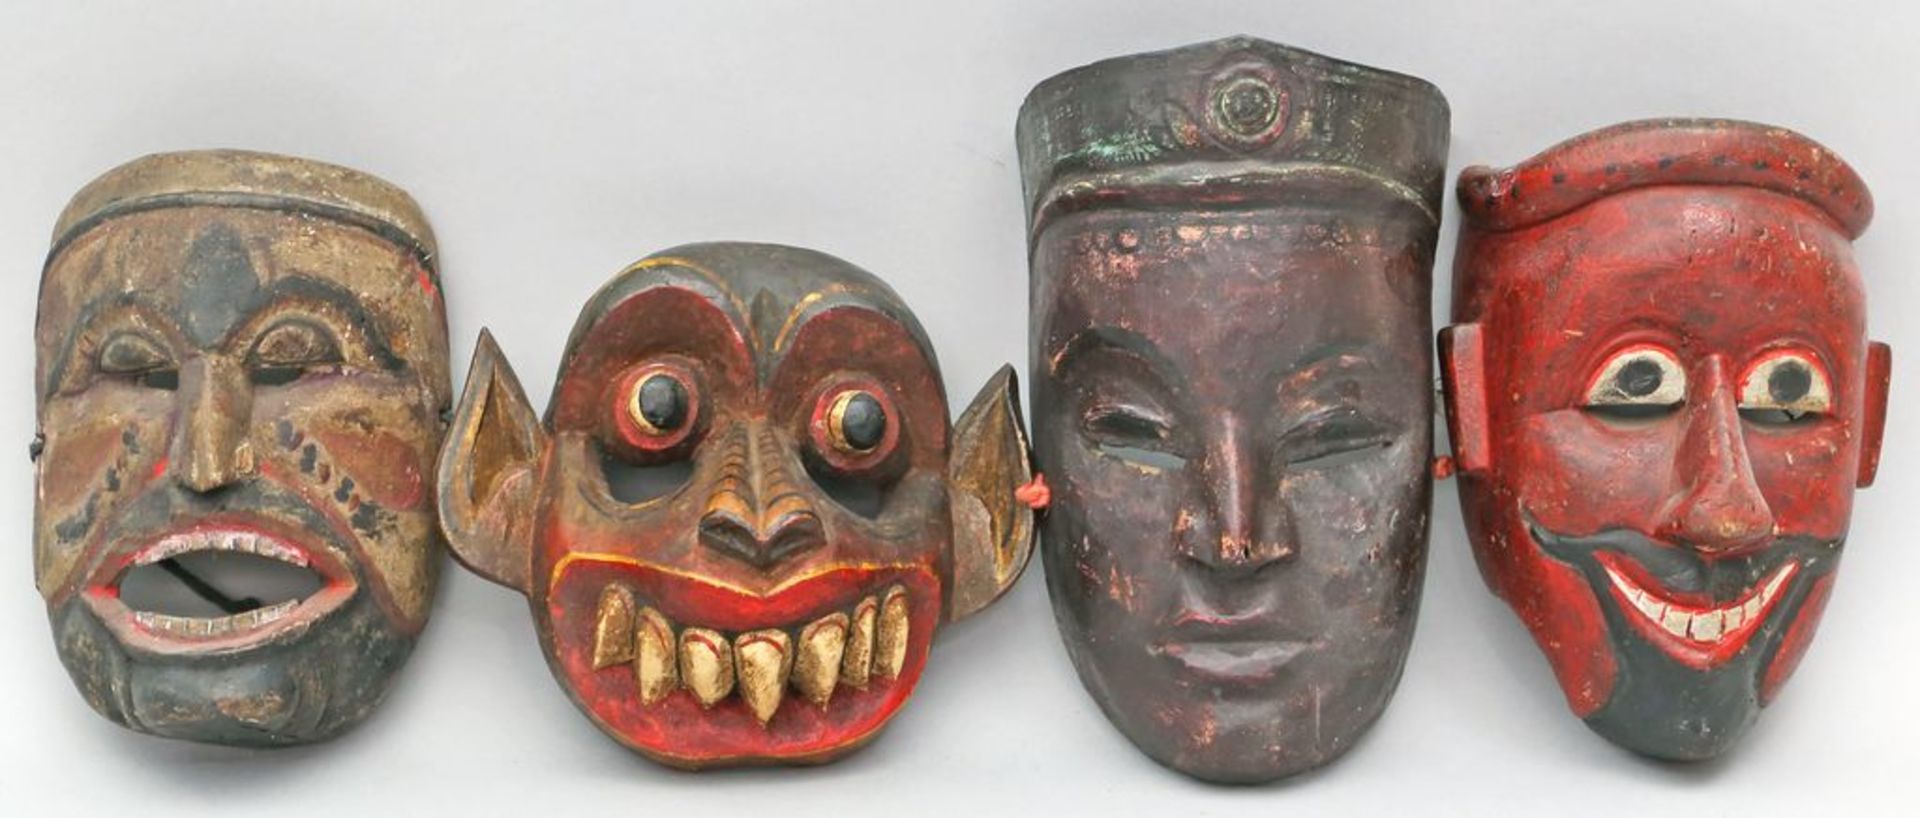 4 div. Masken. Holz, geschnitzt und farbig gefasst. Java oder Indonesien. H. 17 bis 24